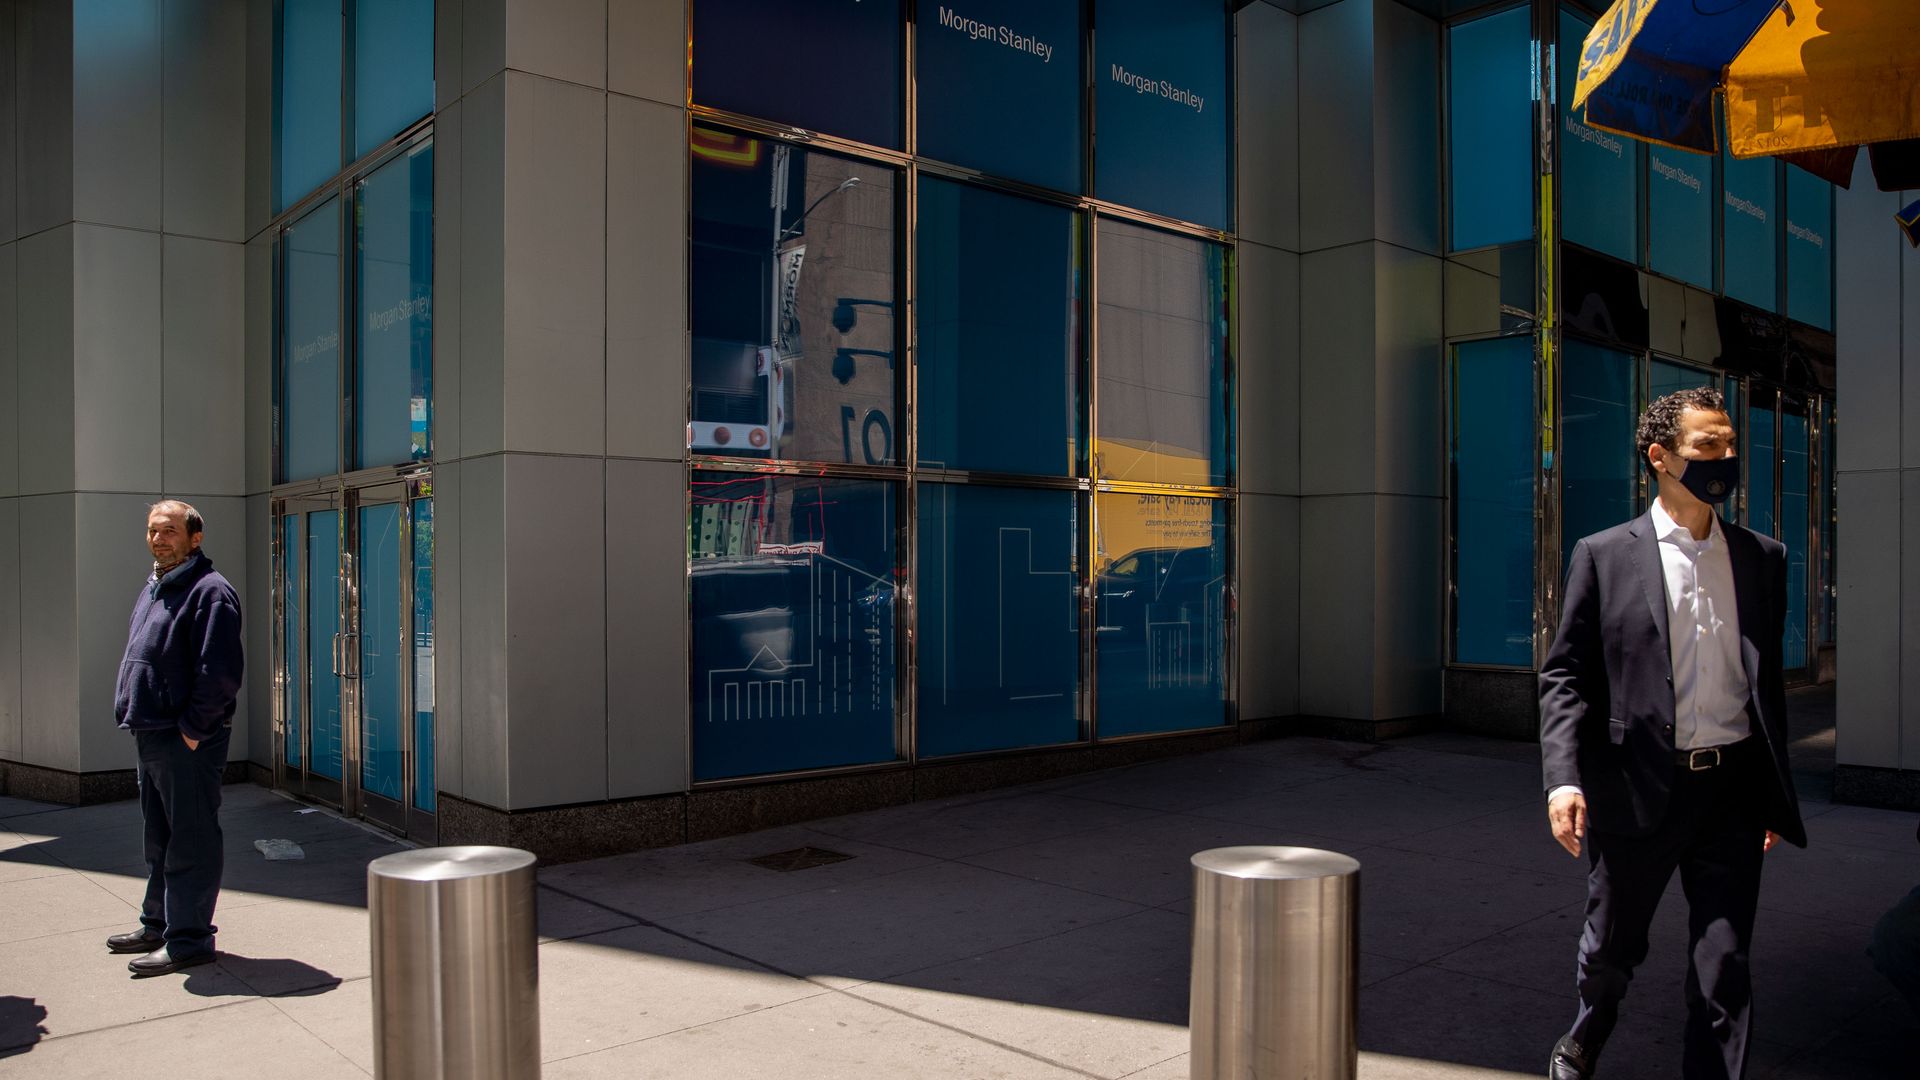 Pedestrians pass in front of Morgan Stanley headquarters in New York, U.S